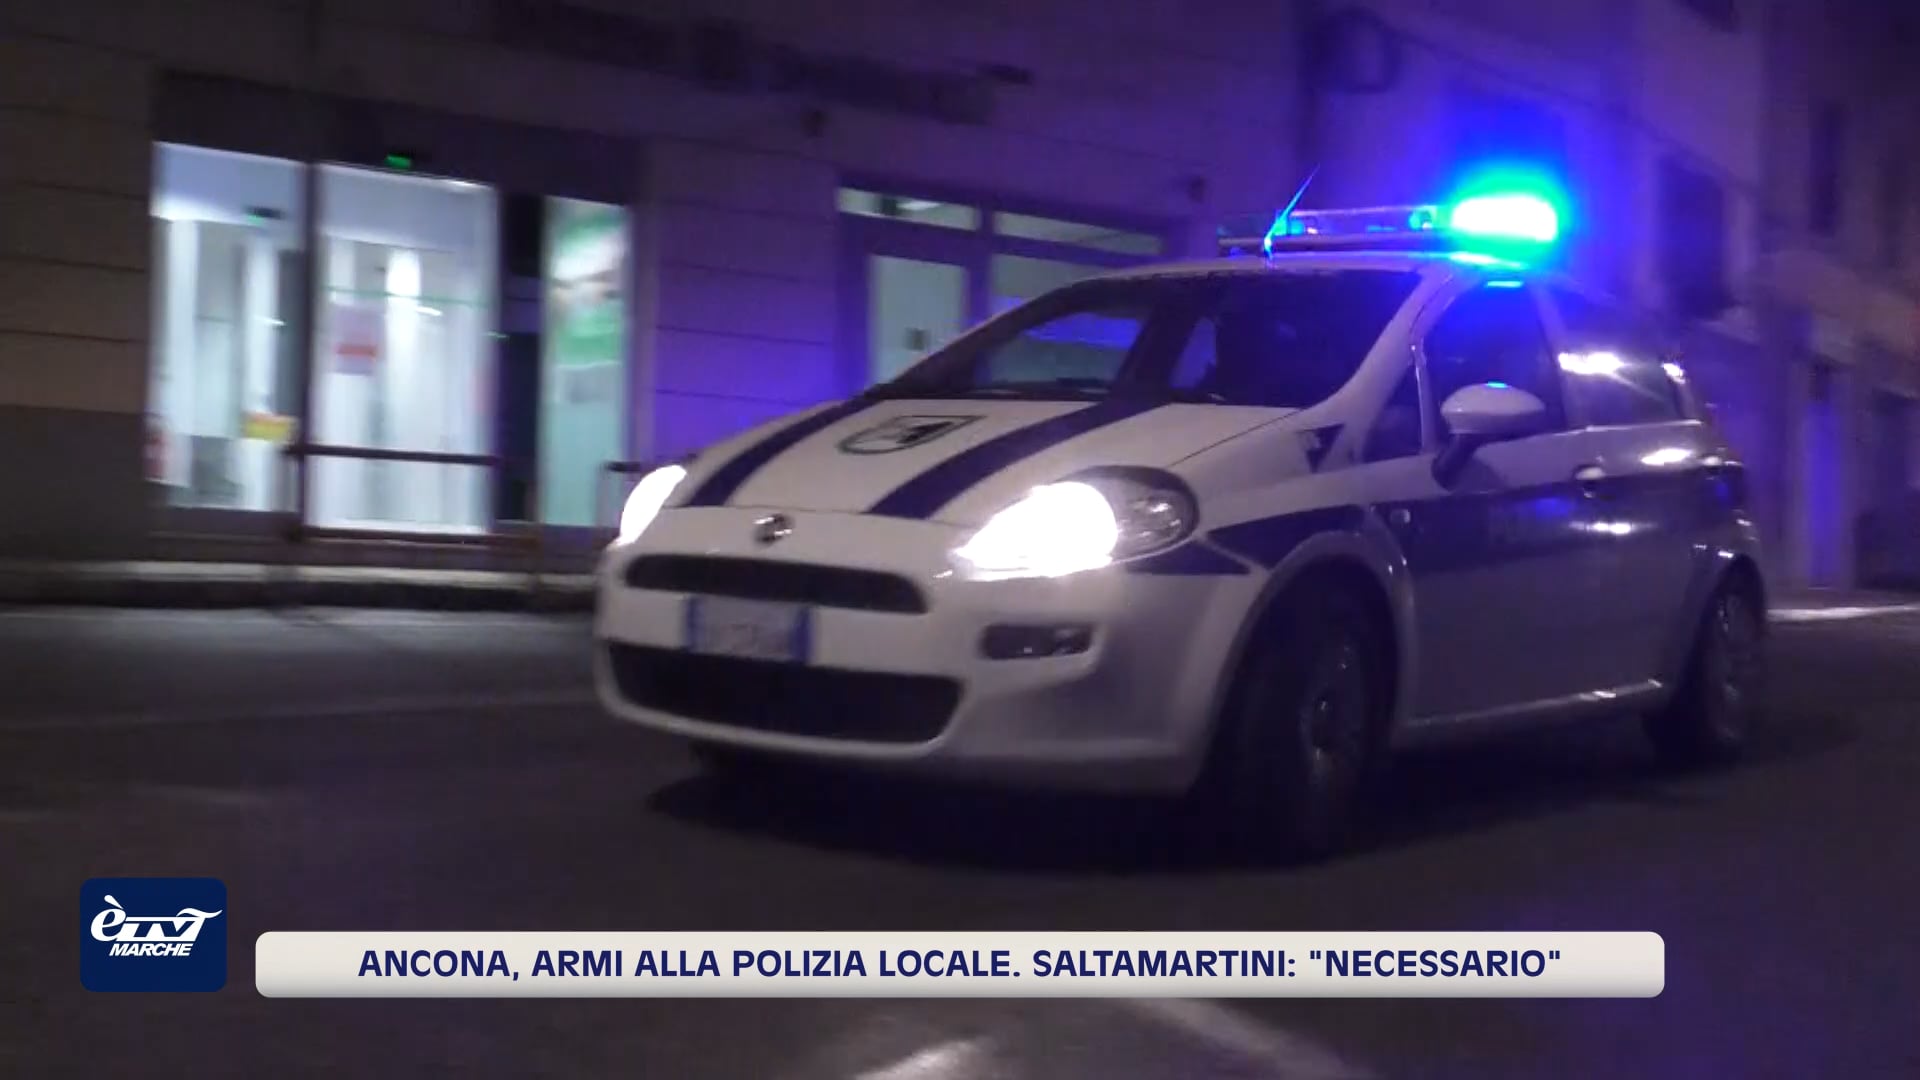 Ancona, armi alla polizia locale. Saltamartini: 